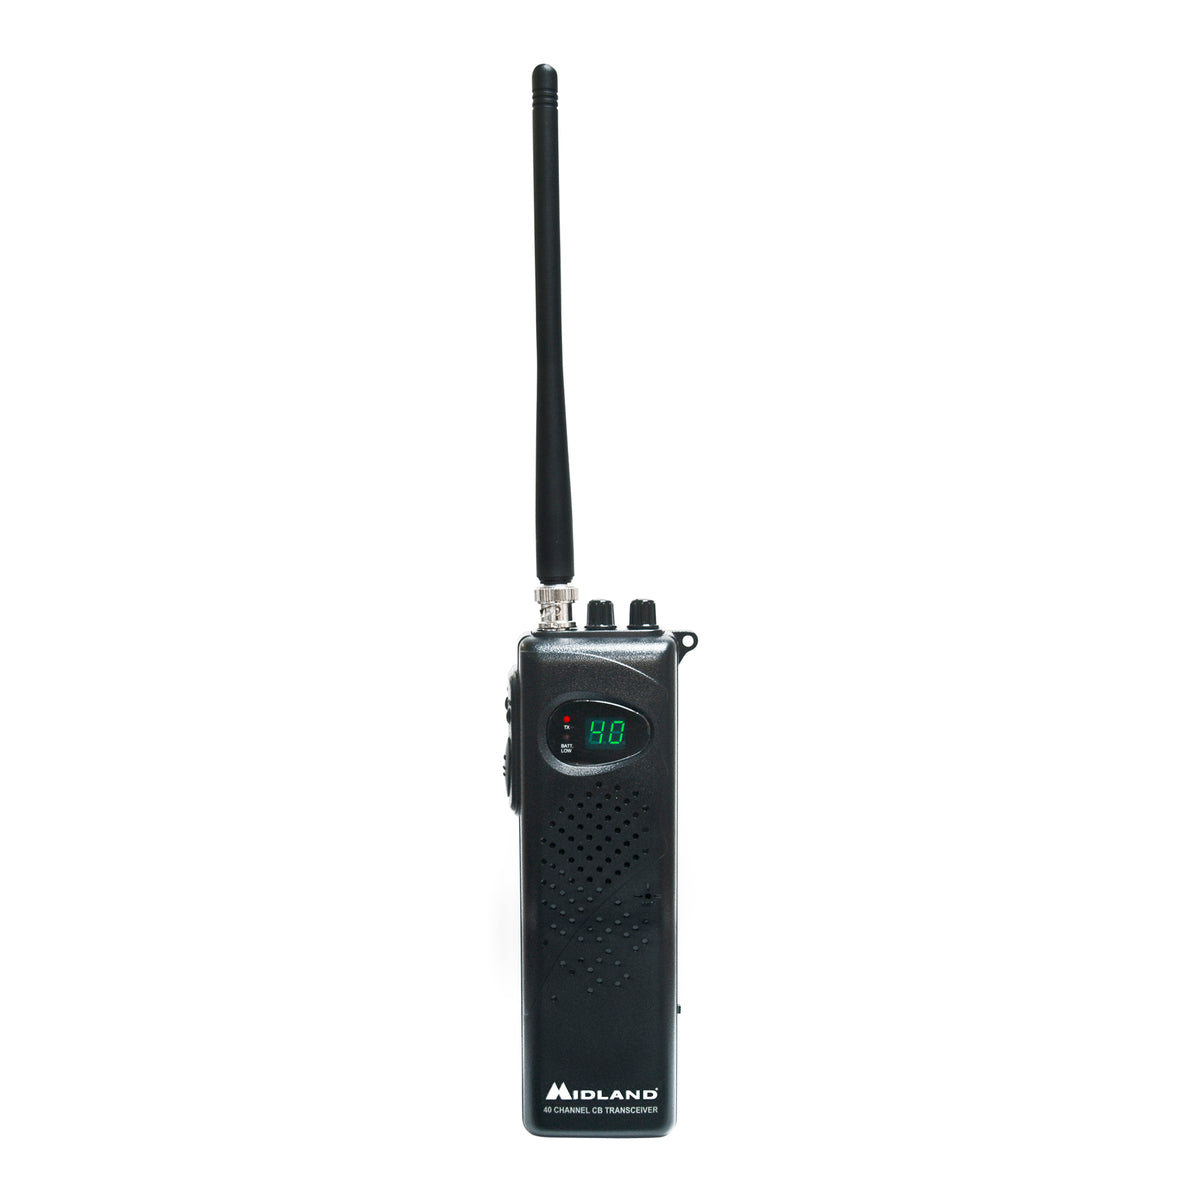 Midland 75-785 Handheld CB Radio